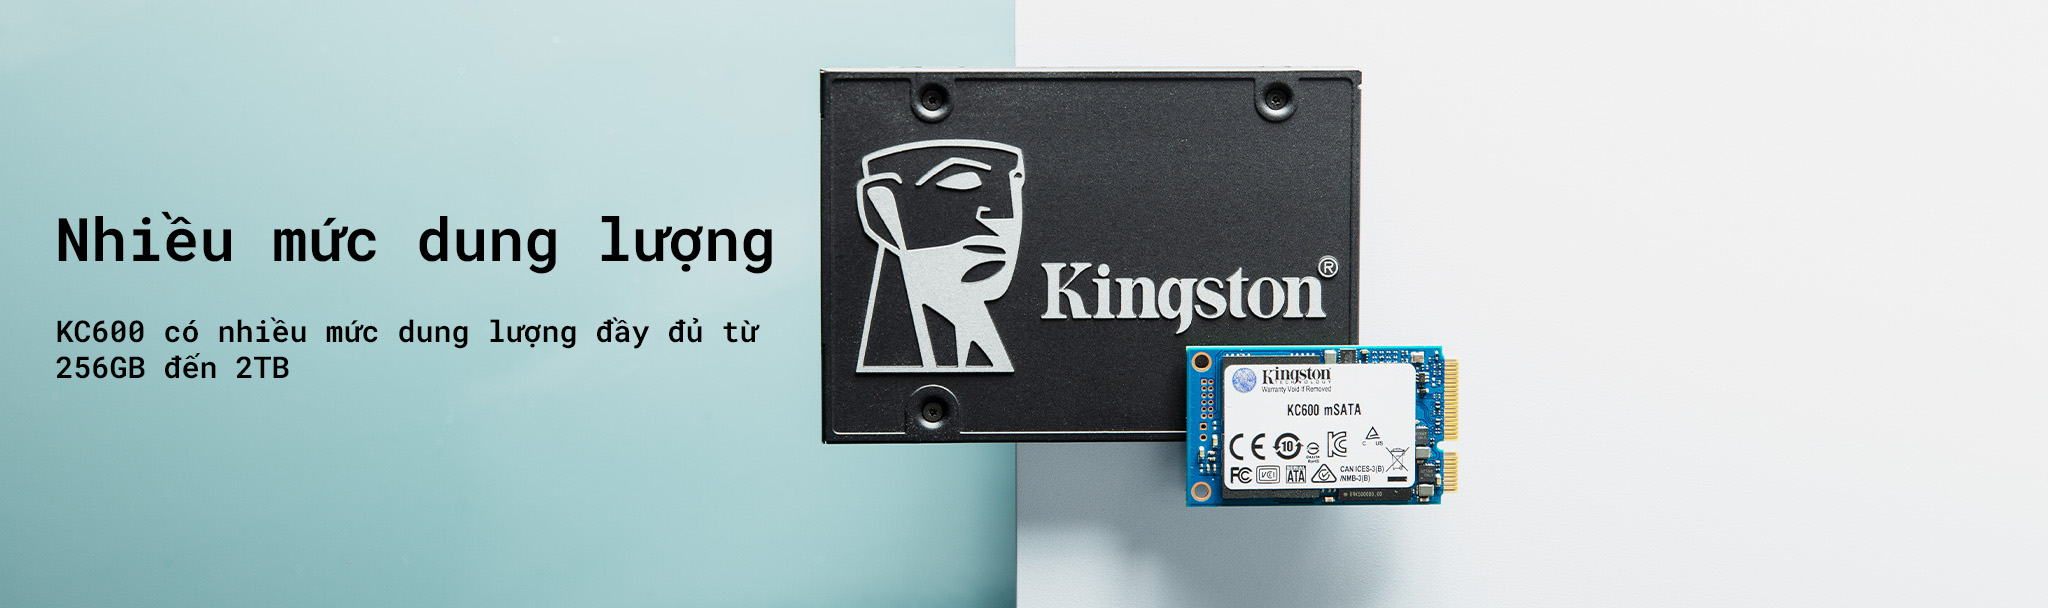 Ổ cứng SSD Kingston KC600